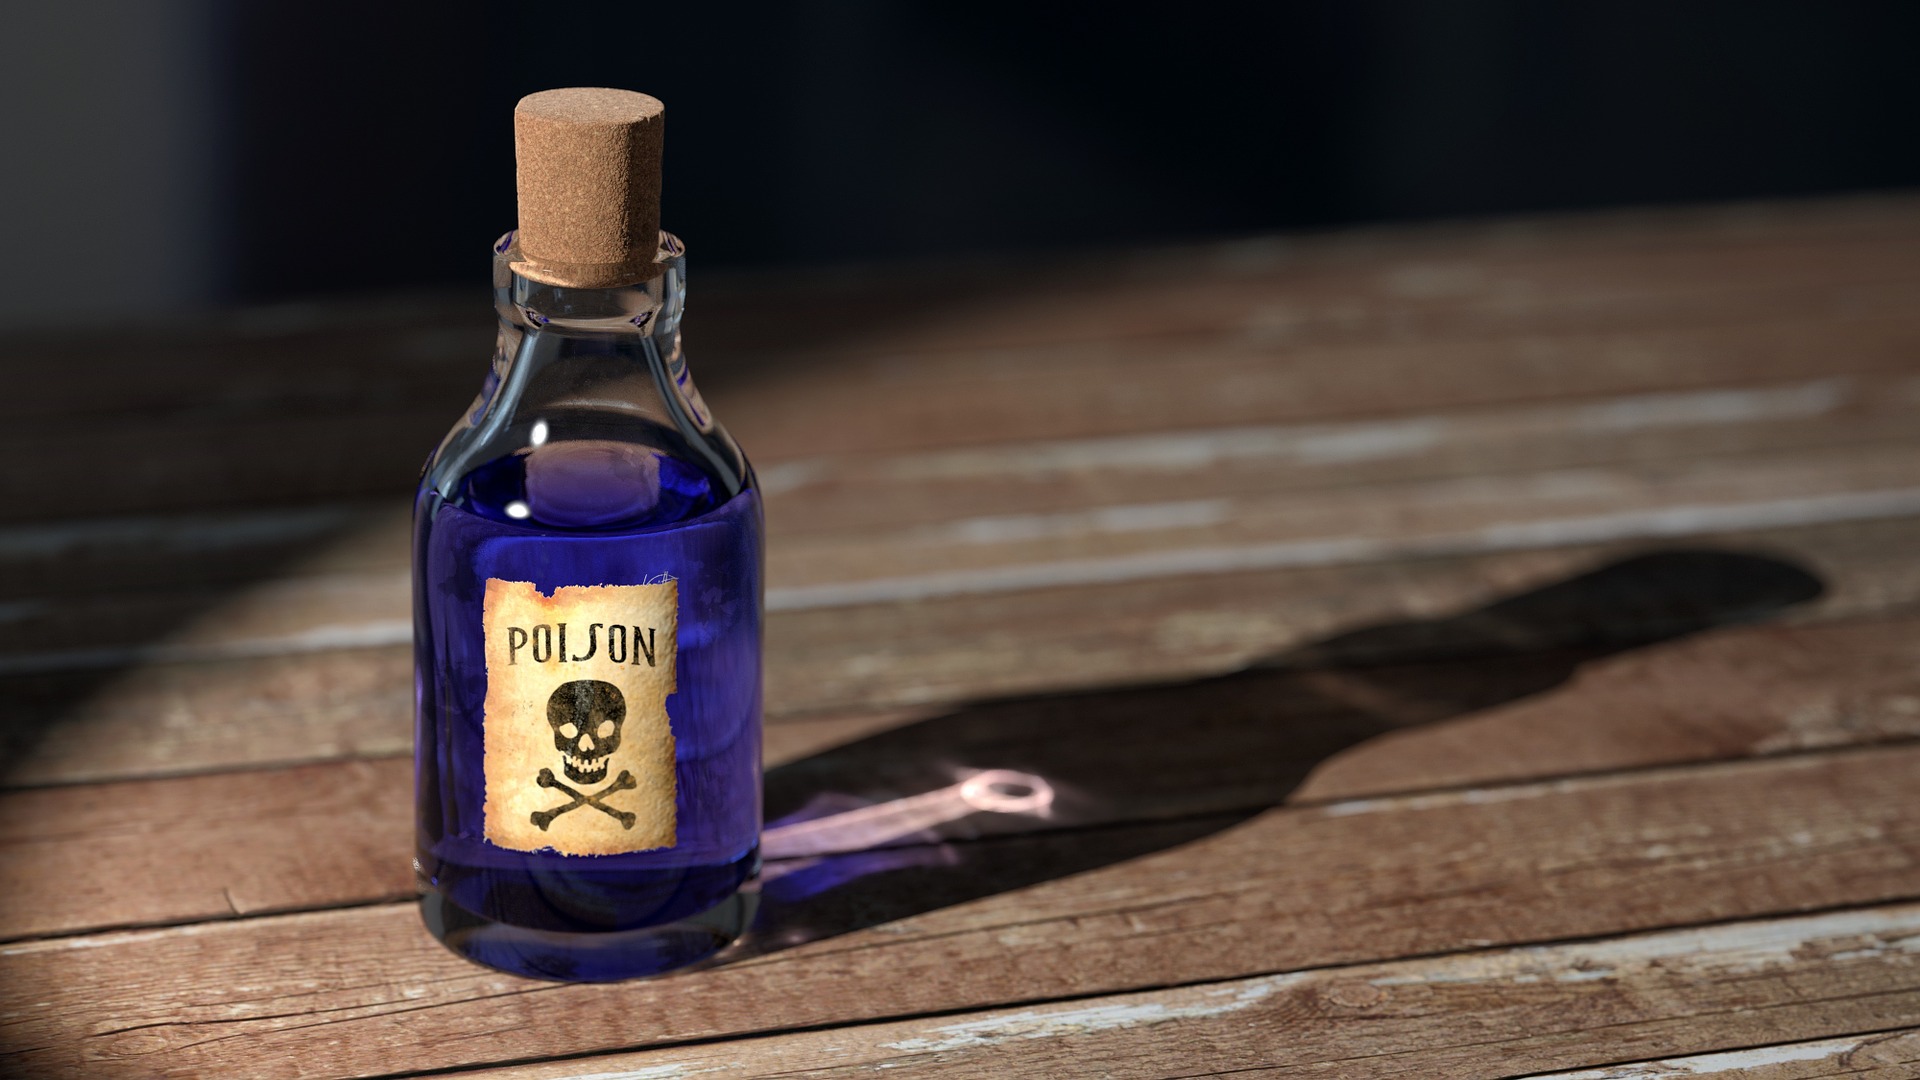 Poison bottle. 